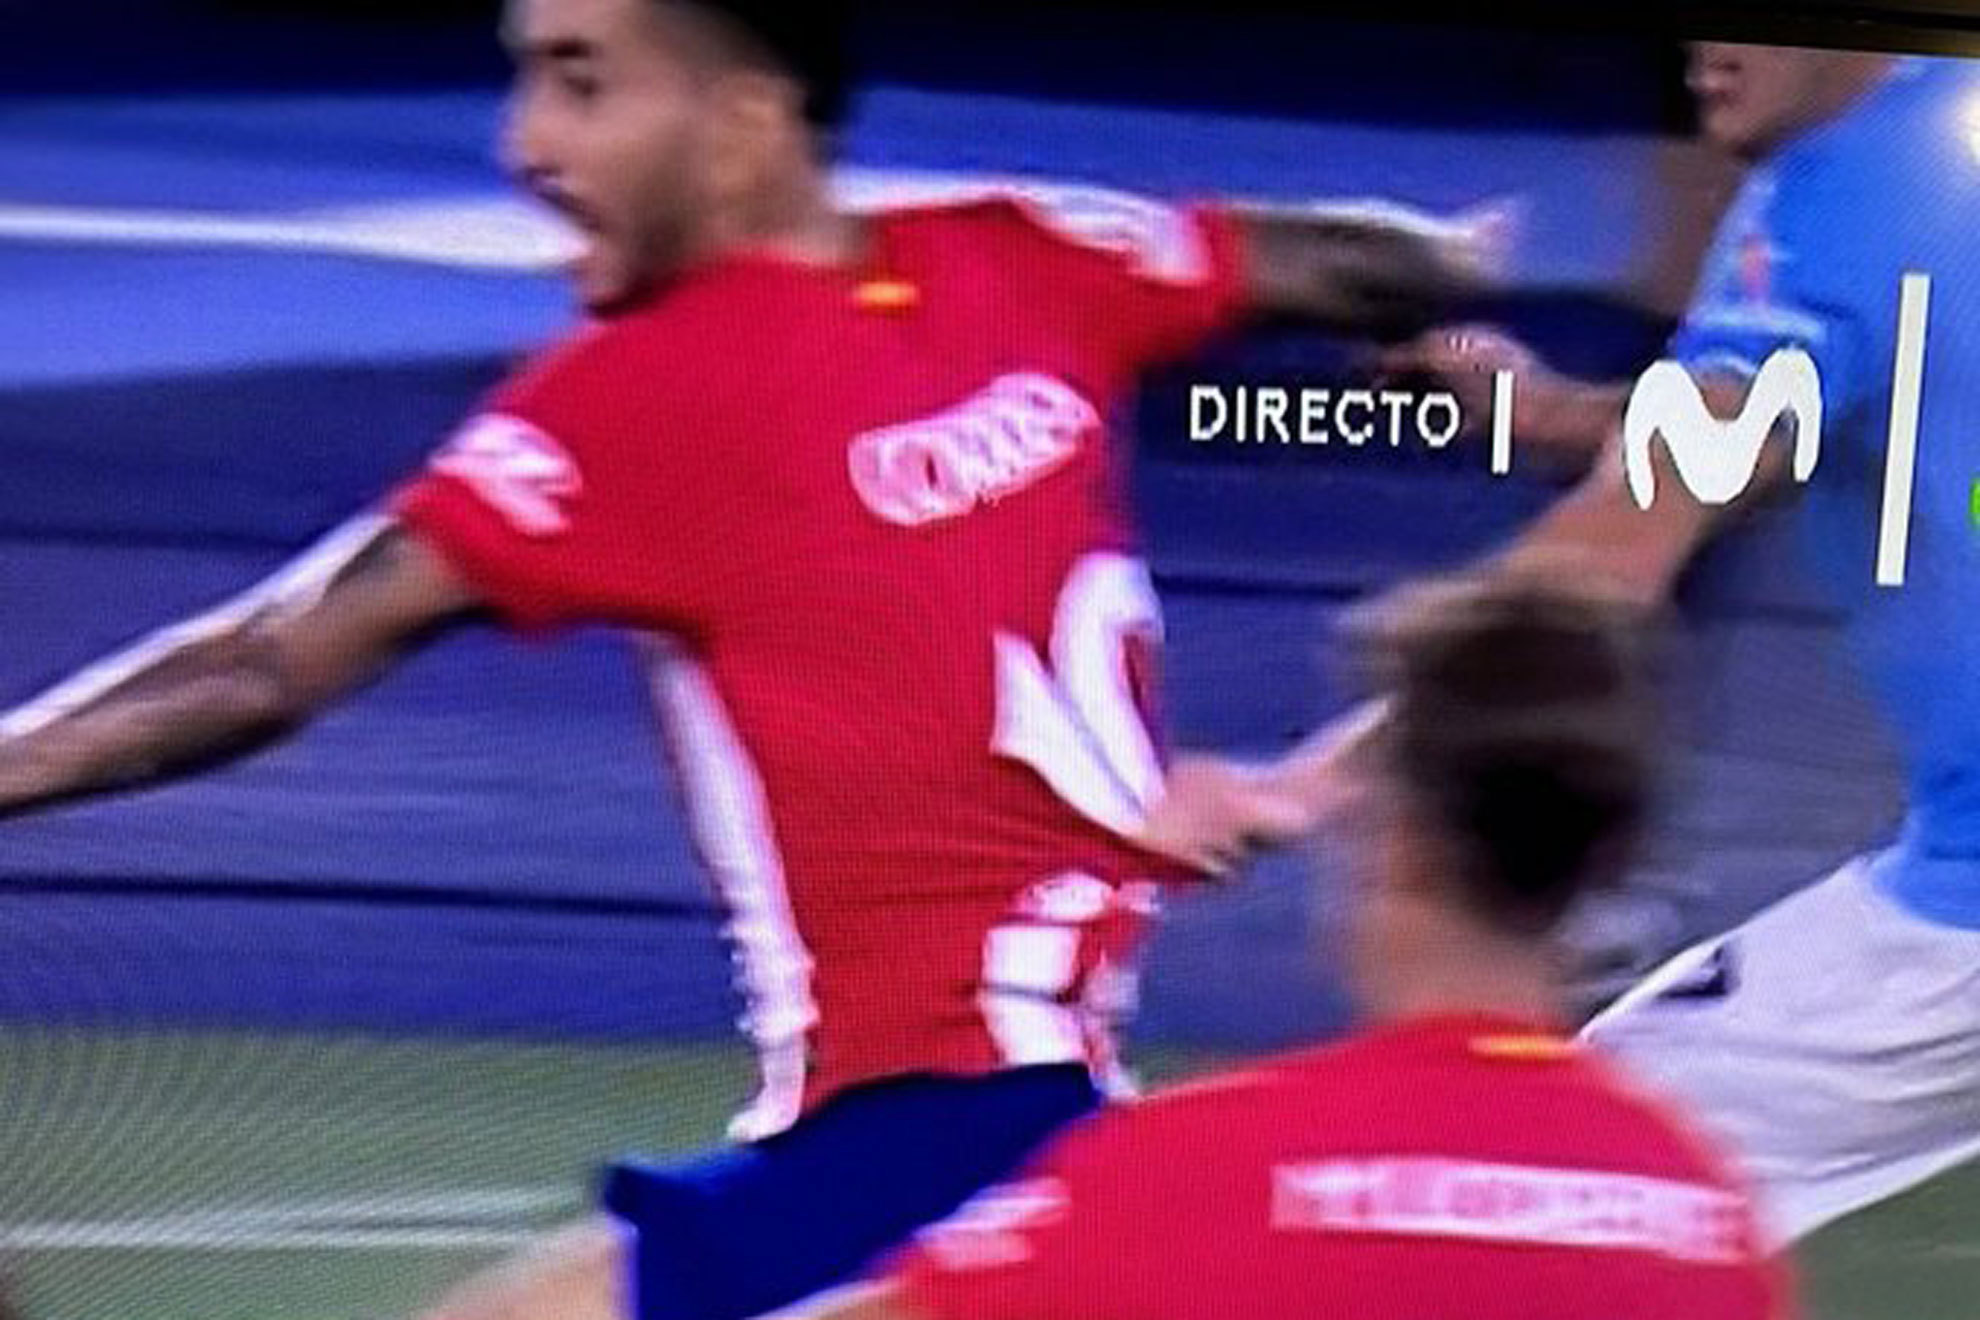 "En la jugada que precede al gol del portero hay una falta muy clara sobre Correa"